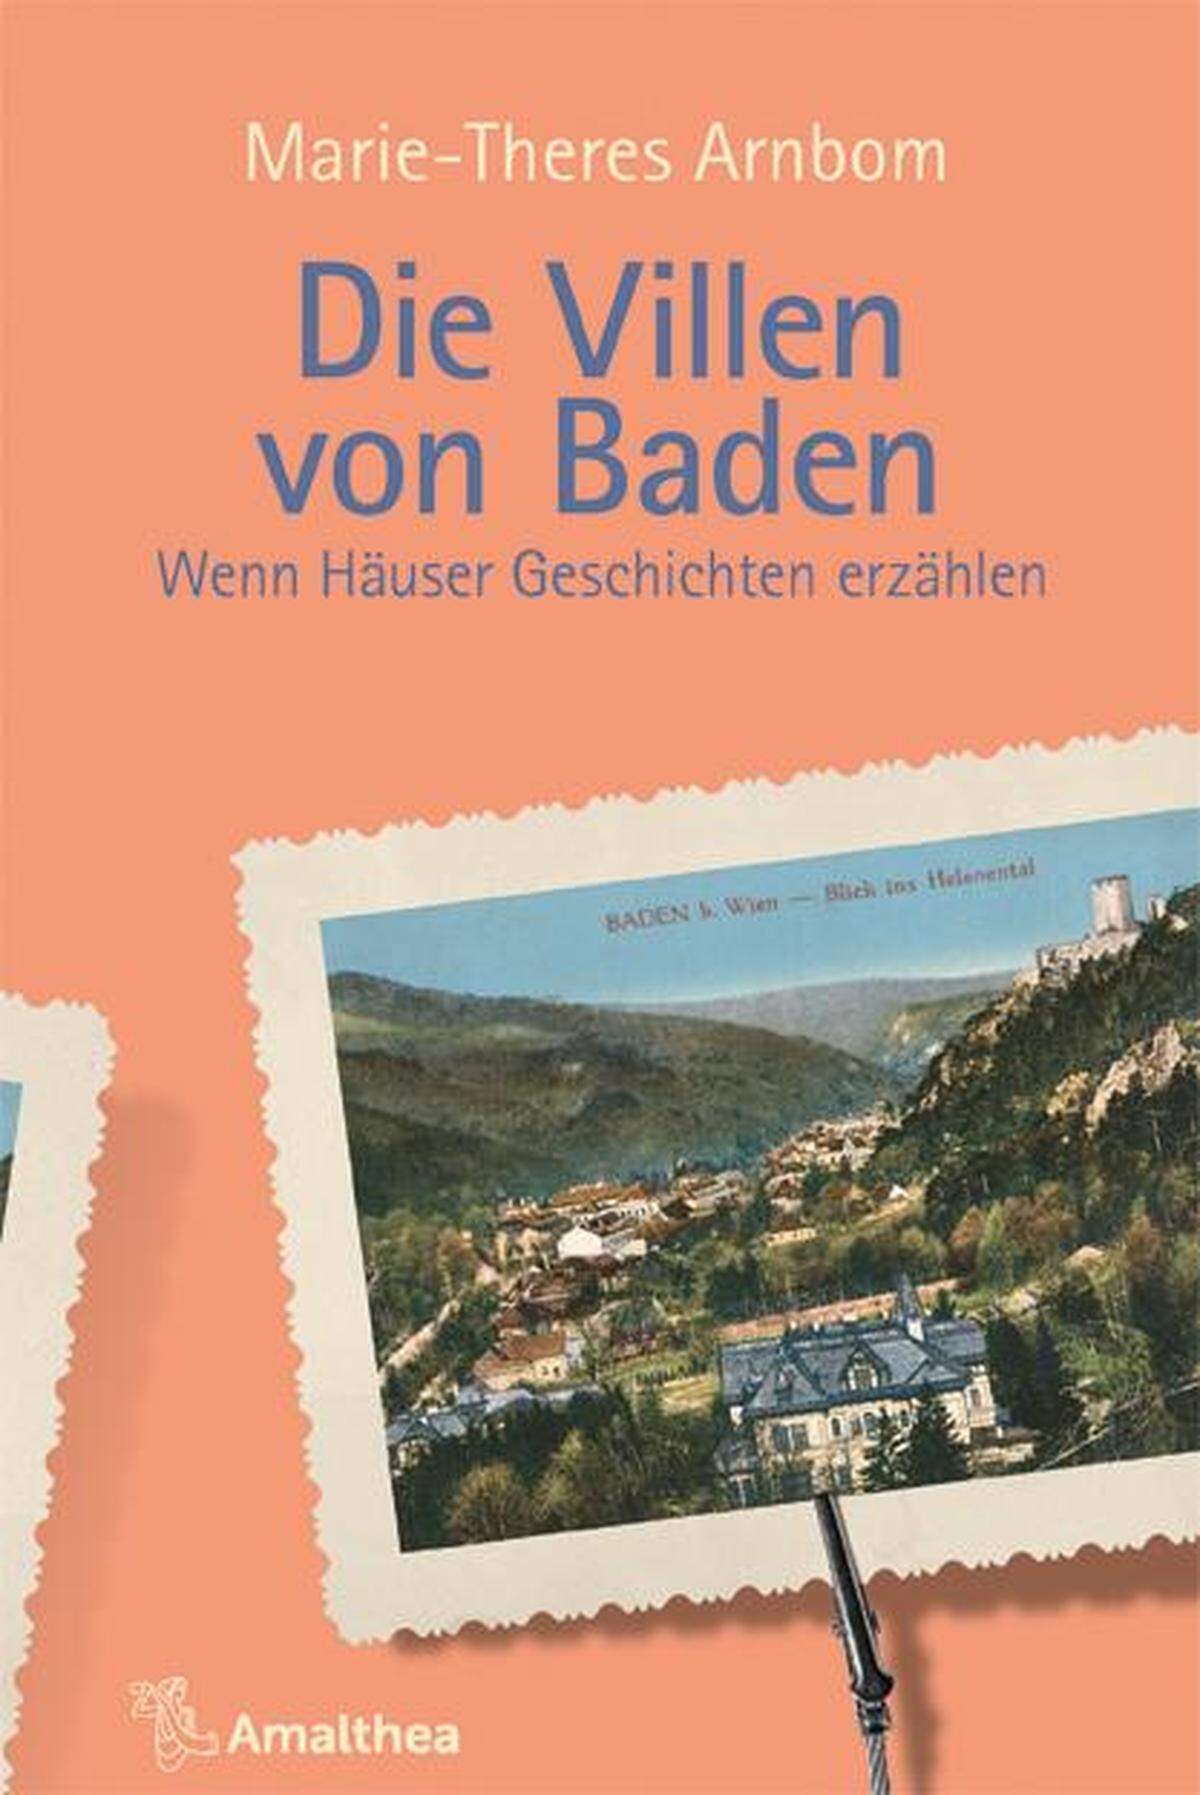 Marie-Theres Arnbom: „Die Villen von Baden – Wenn Häuser Geschichten erzählen“, Amalthea-Verlag, 2022.